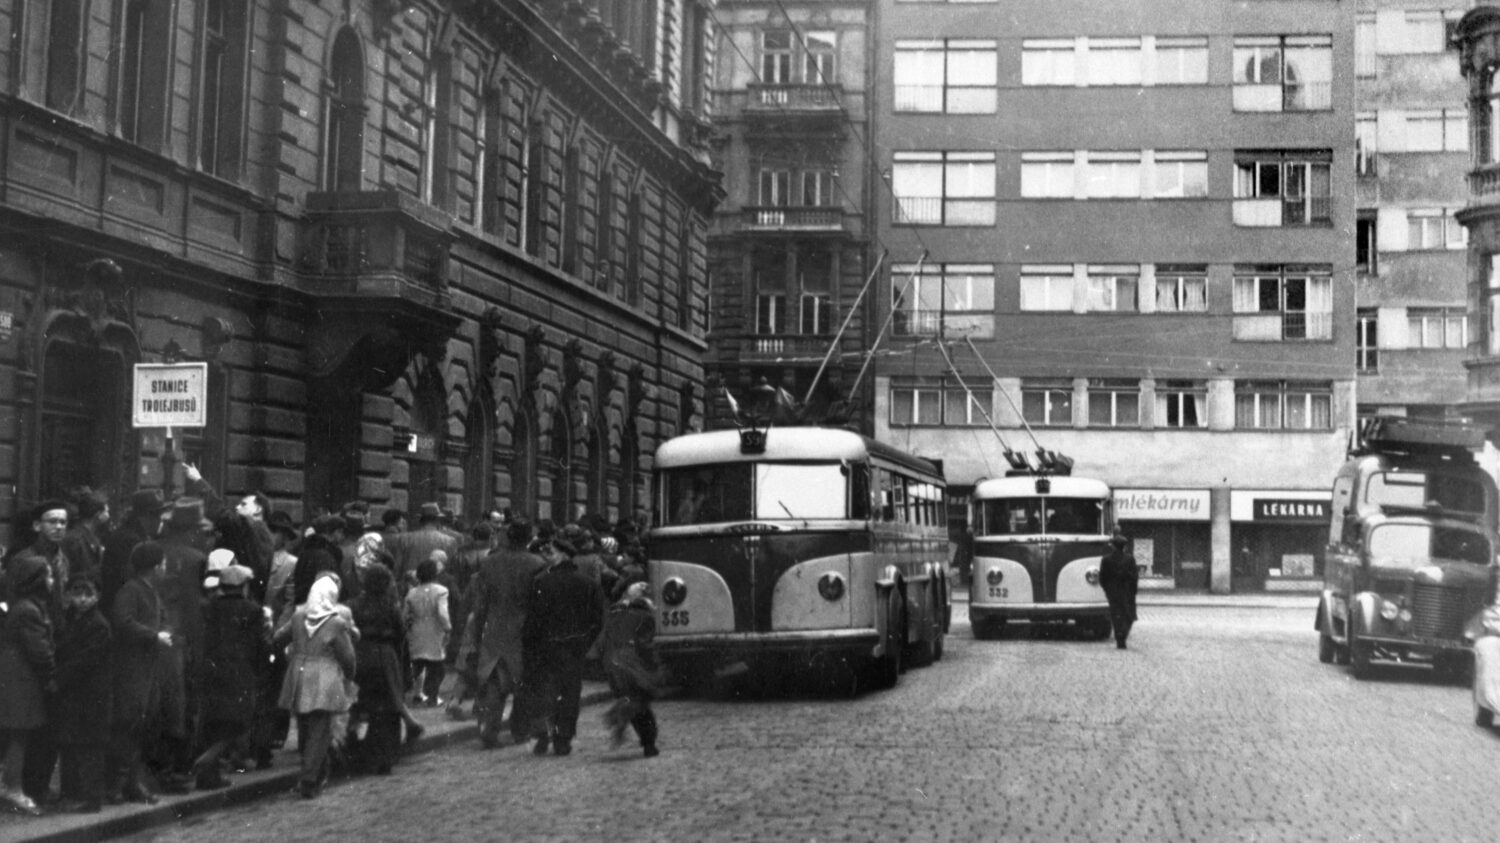 Trolejbusy Tatra 400 v den zahájení pravidelného provozu (18. 4. 1954) na lince č. 59. Snímek pochází z konečné na Újezdě, kam byla linka č. 59 dodatečně v rámci výstavby svedena. (zdroj: archiv DPP)